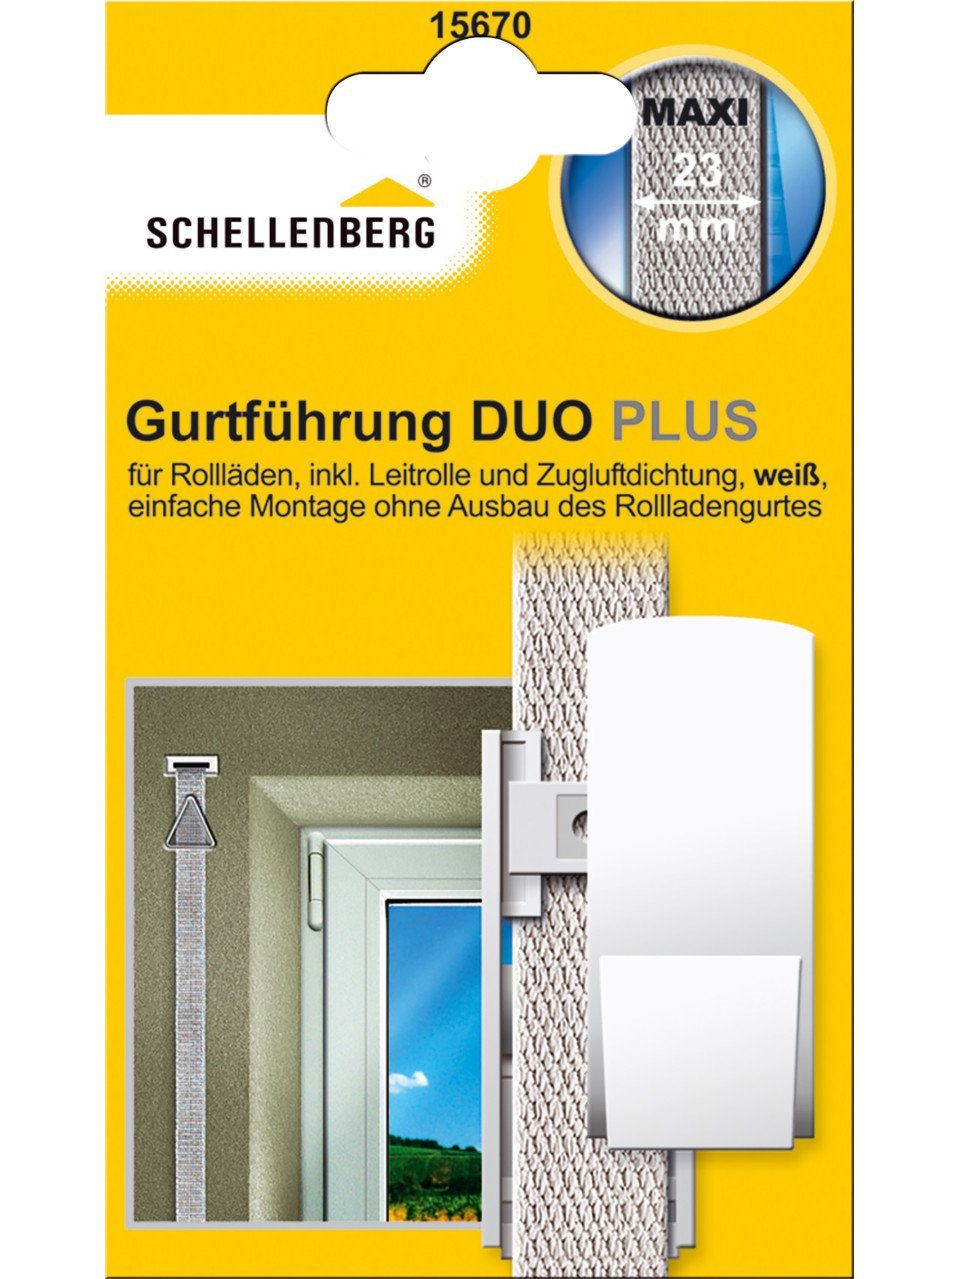 SCHELLENBERG Rollladenprofil Schellenberg Gurtführung Duo System weiß Maxi Plus